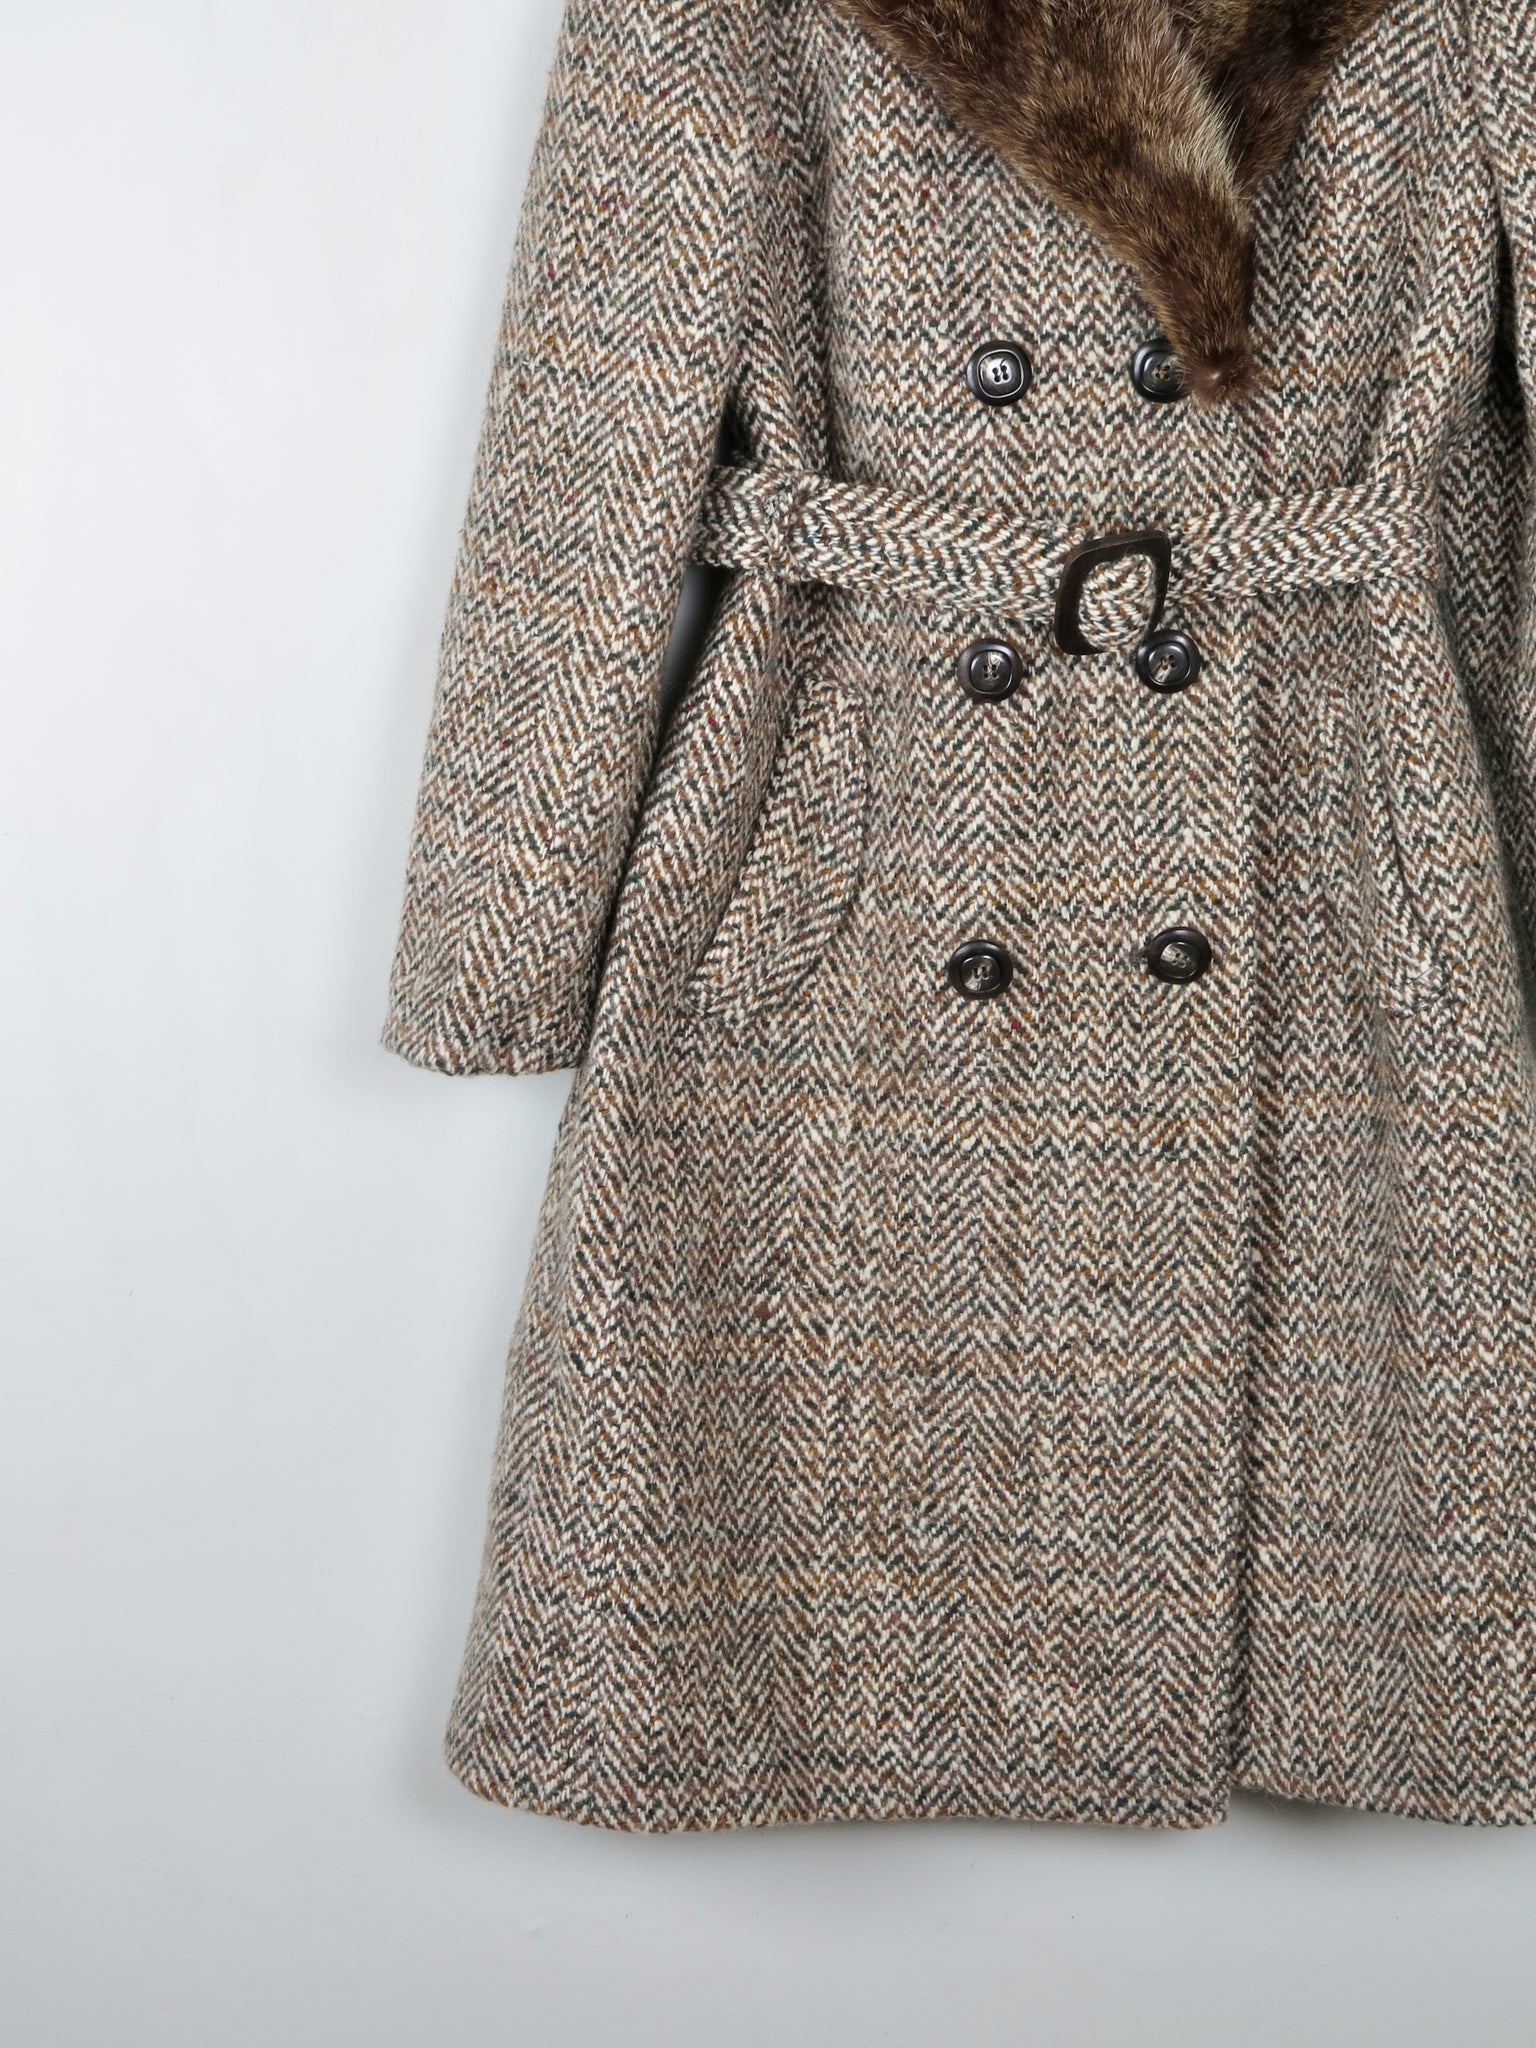 Women's 1970s Tweed Coat With Fur Collar 10/12